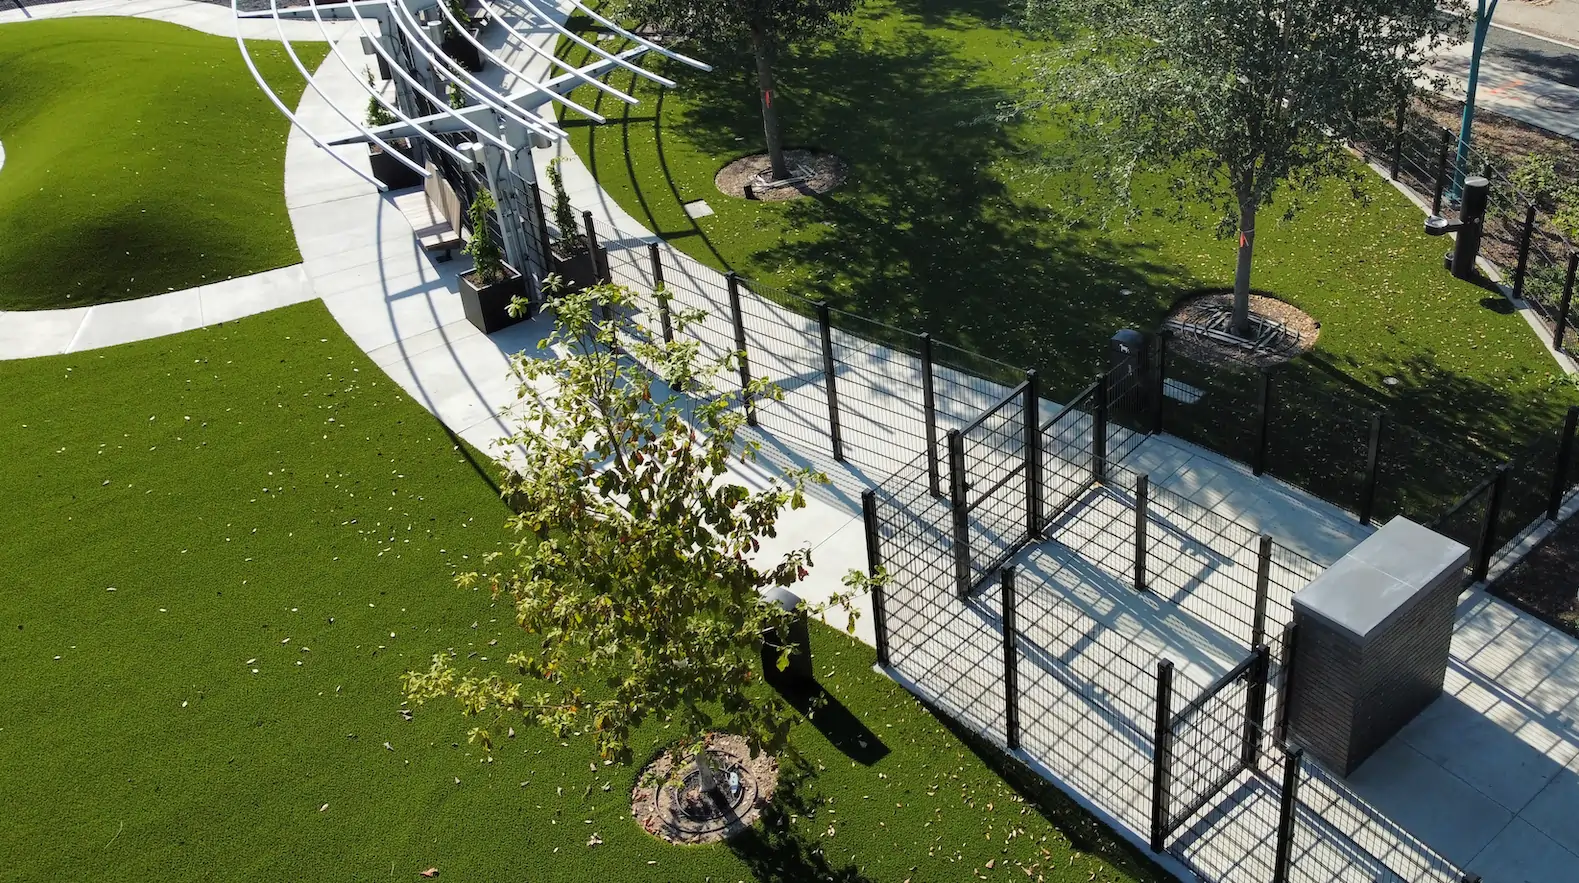 dog park built on artificial grass